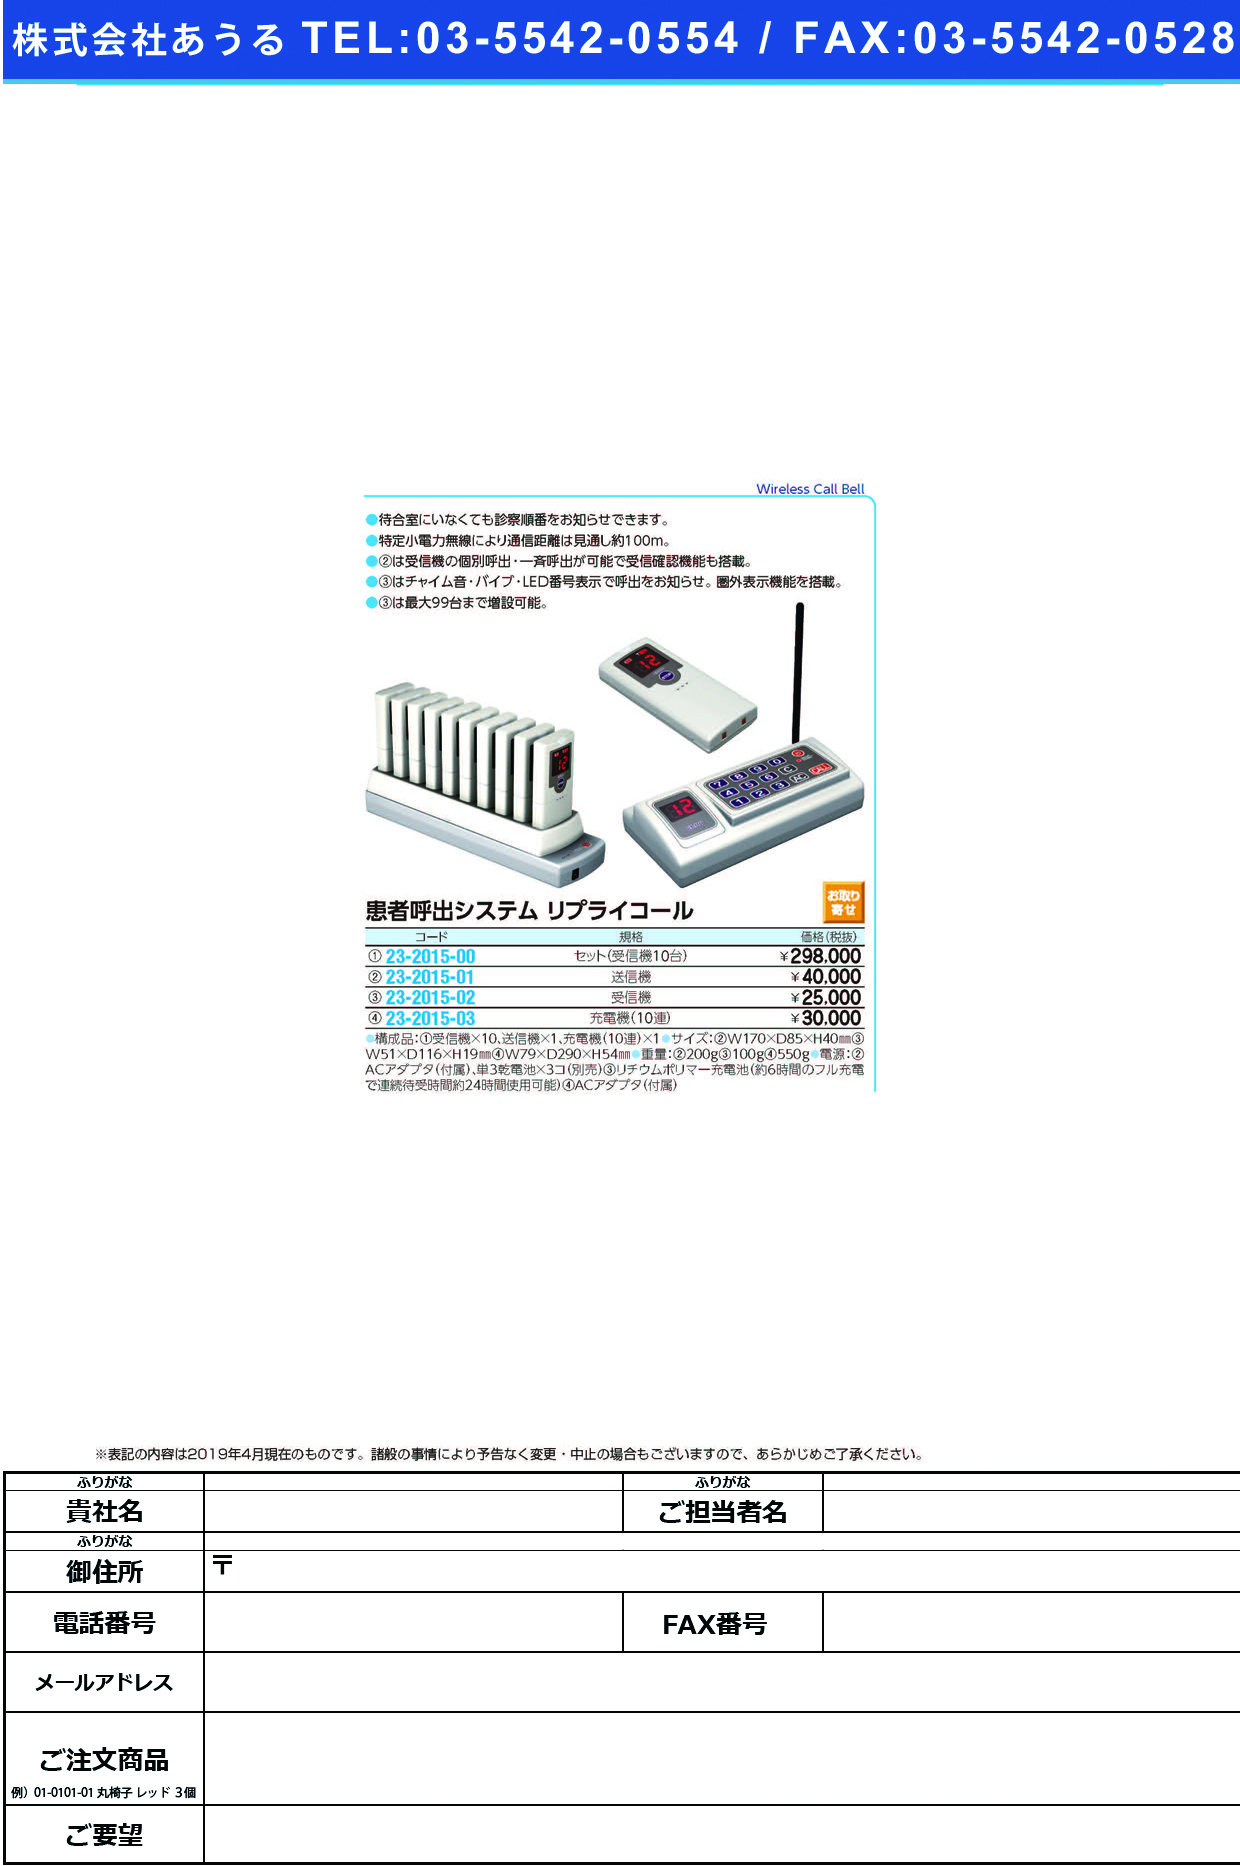 (23-2015-03)呼出システムリプライコール充電機 RE-310(10ﾚﾝ) ﾘﾌﾟﾗｲｺｰﾙｼﾞｭｳﾃﾞﾝｷ【1台単位】【2019年カタログ商品】